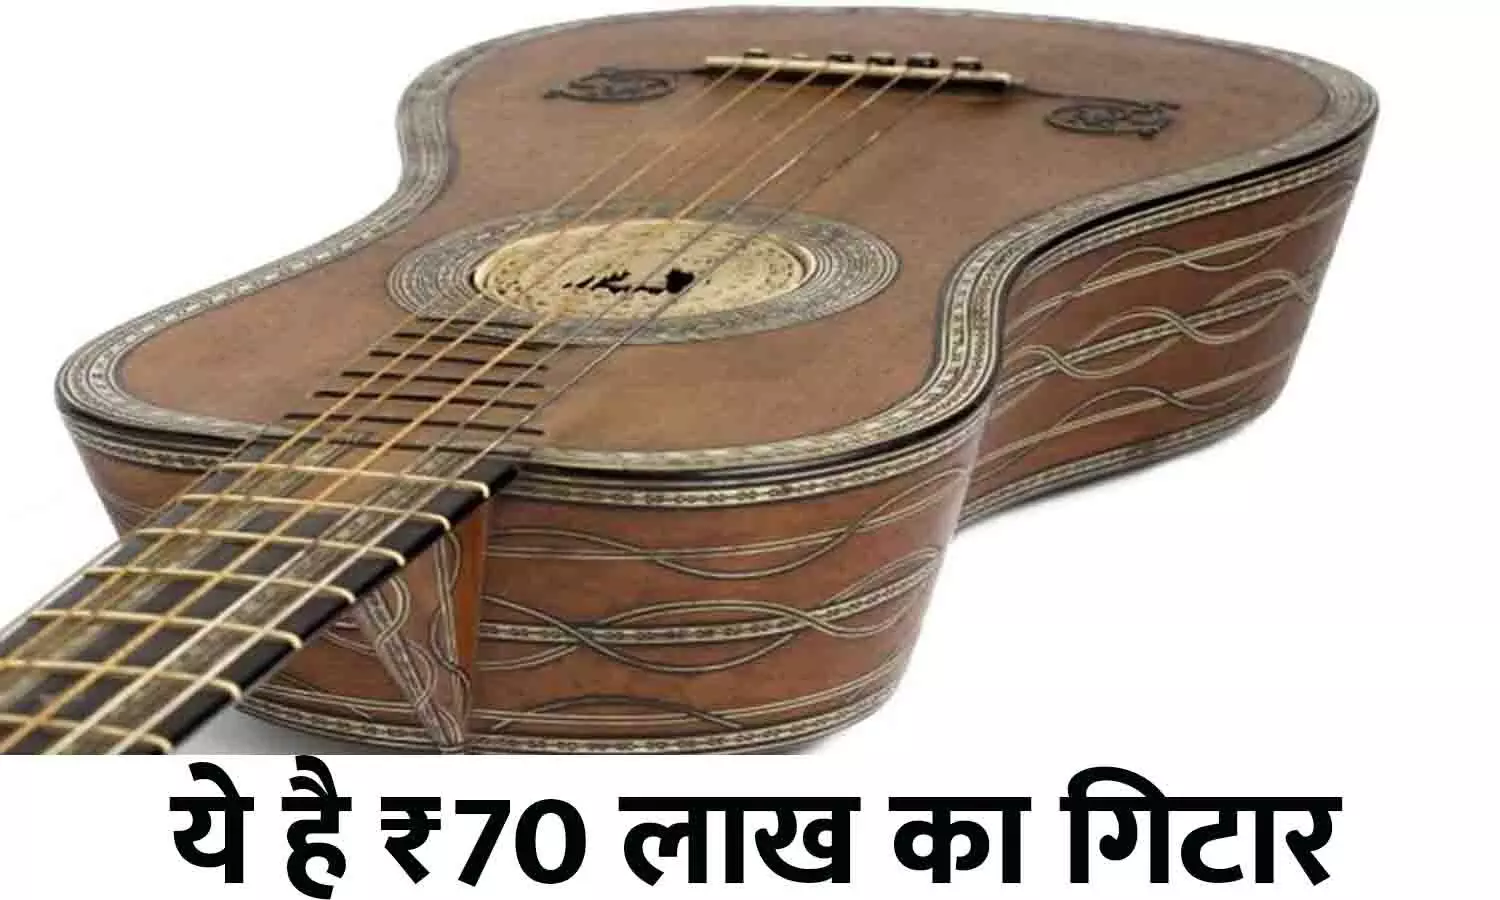 Rare Guitar Price